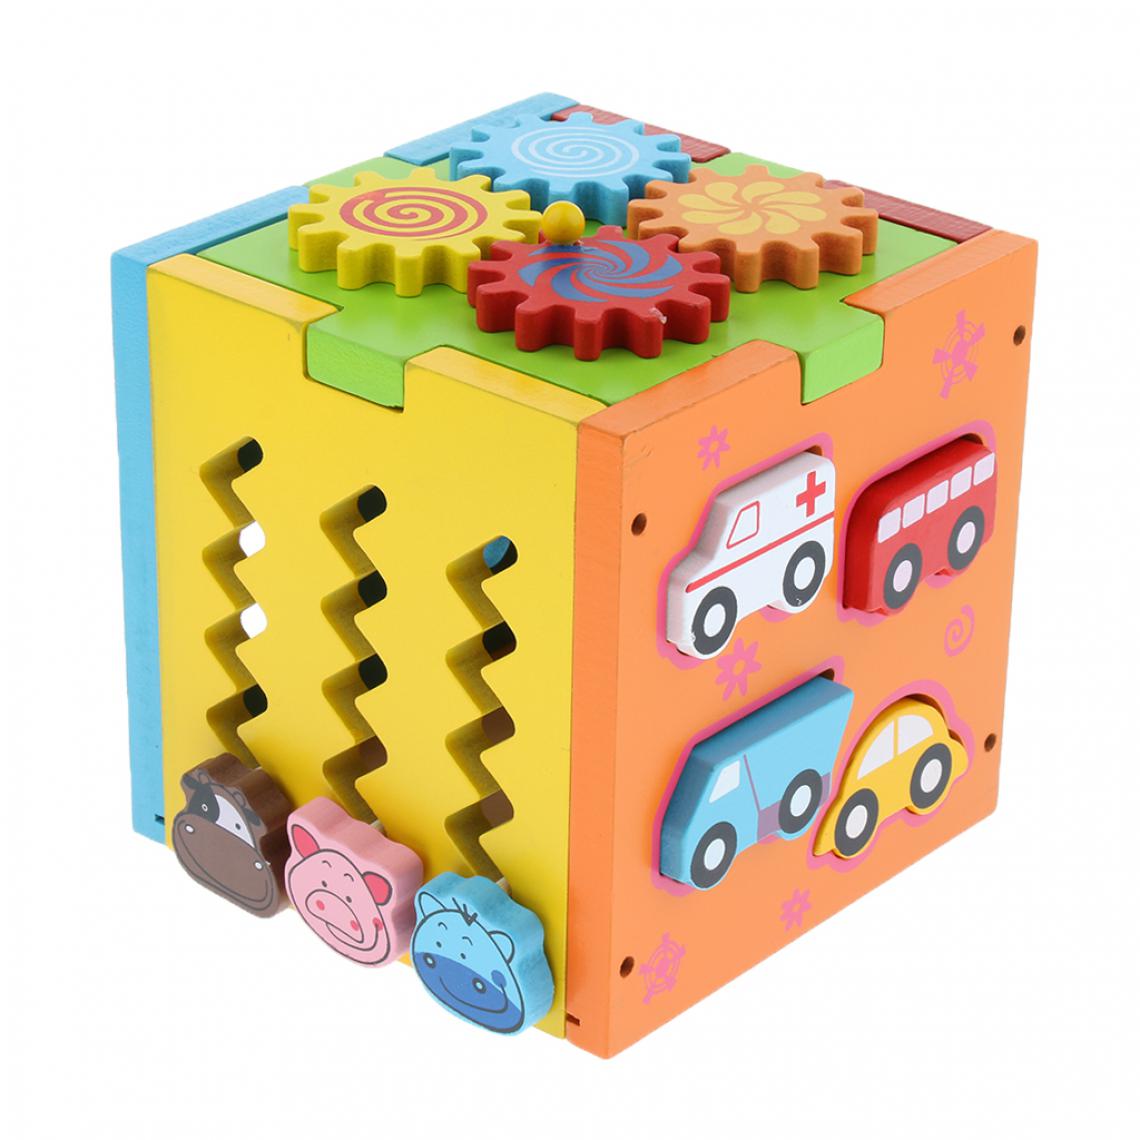 marque generique - Jeu de Engrenages Rotatif Puzzle en Bois Bloc Géométriques Couleurs et Formes pour Enfants Montessori Jouets Éducatif - Jeux d'éveil